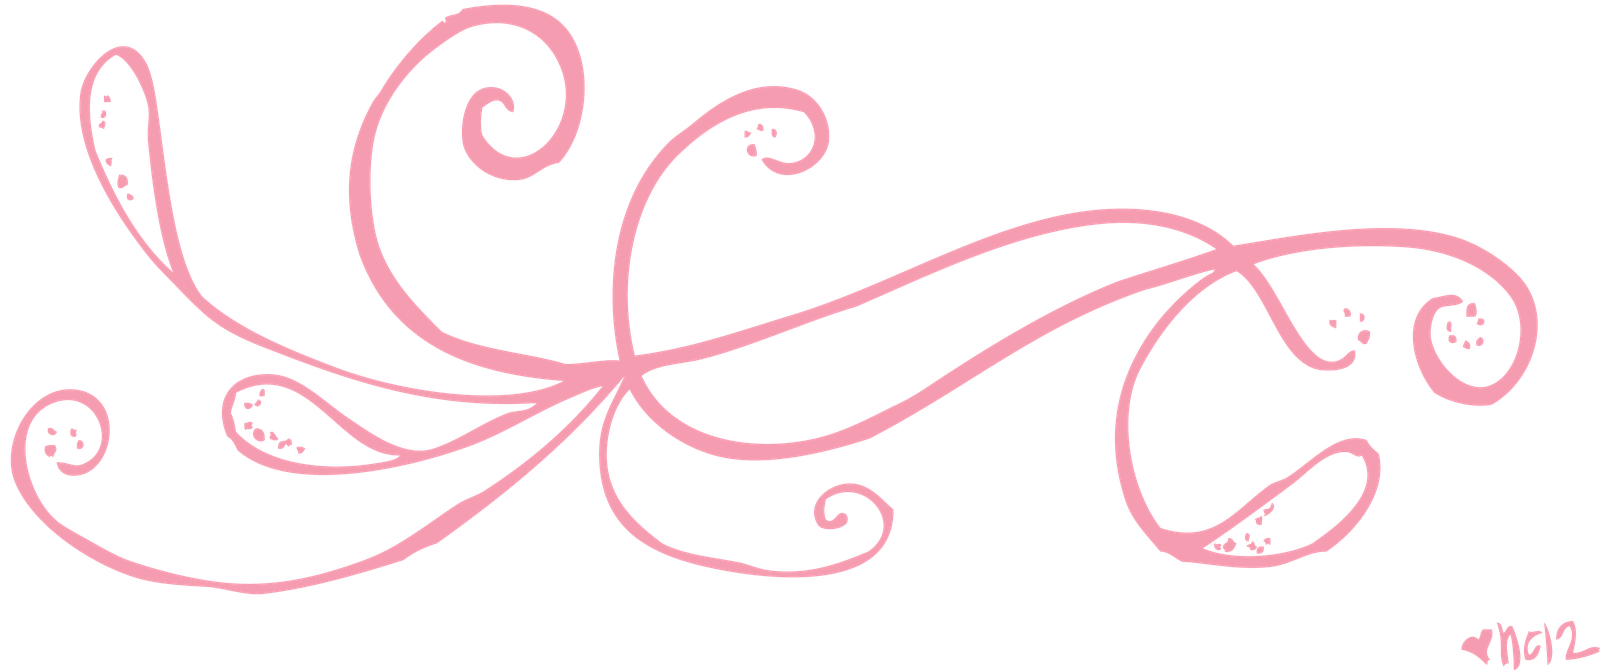 Pink Swirly Designs – Design & art